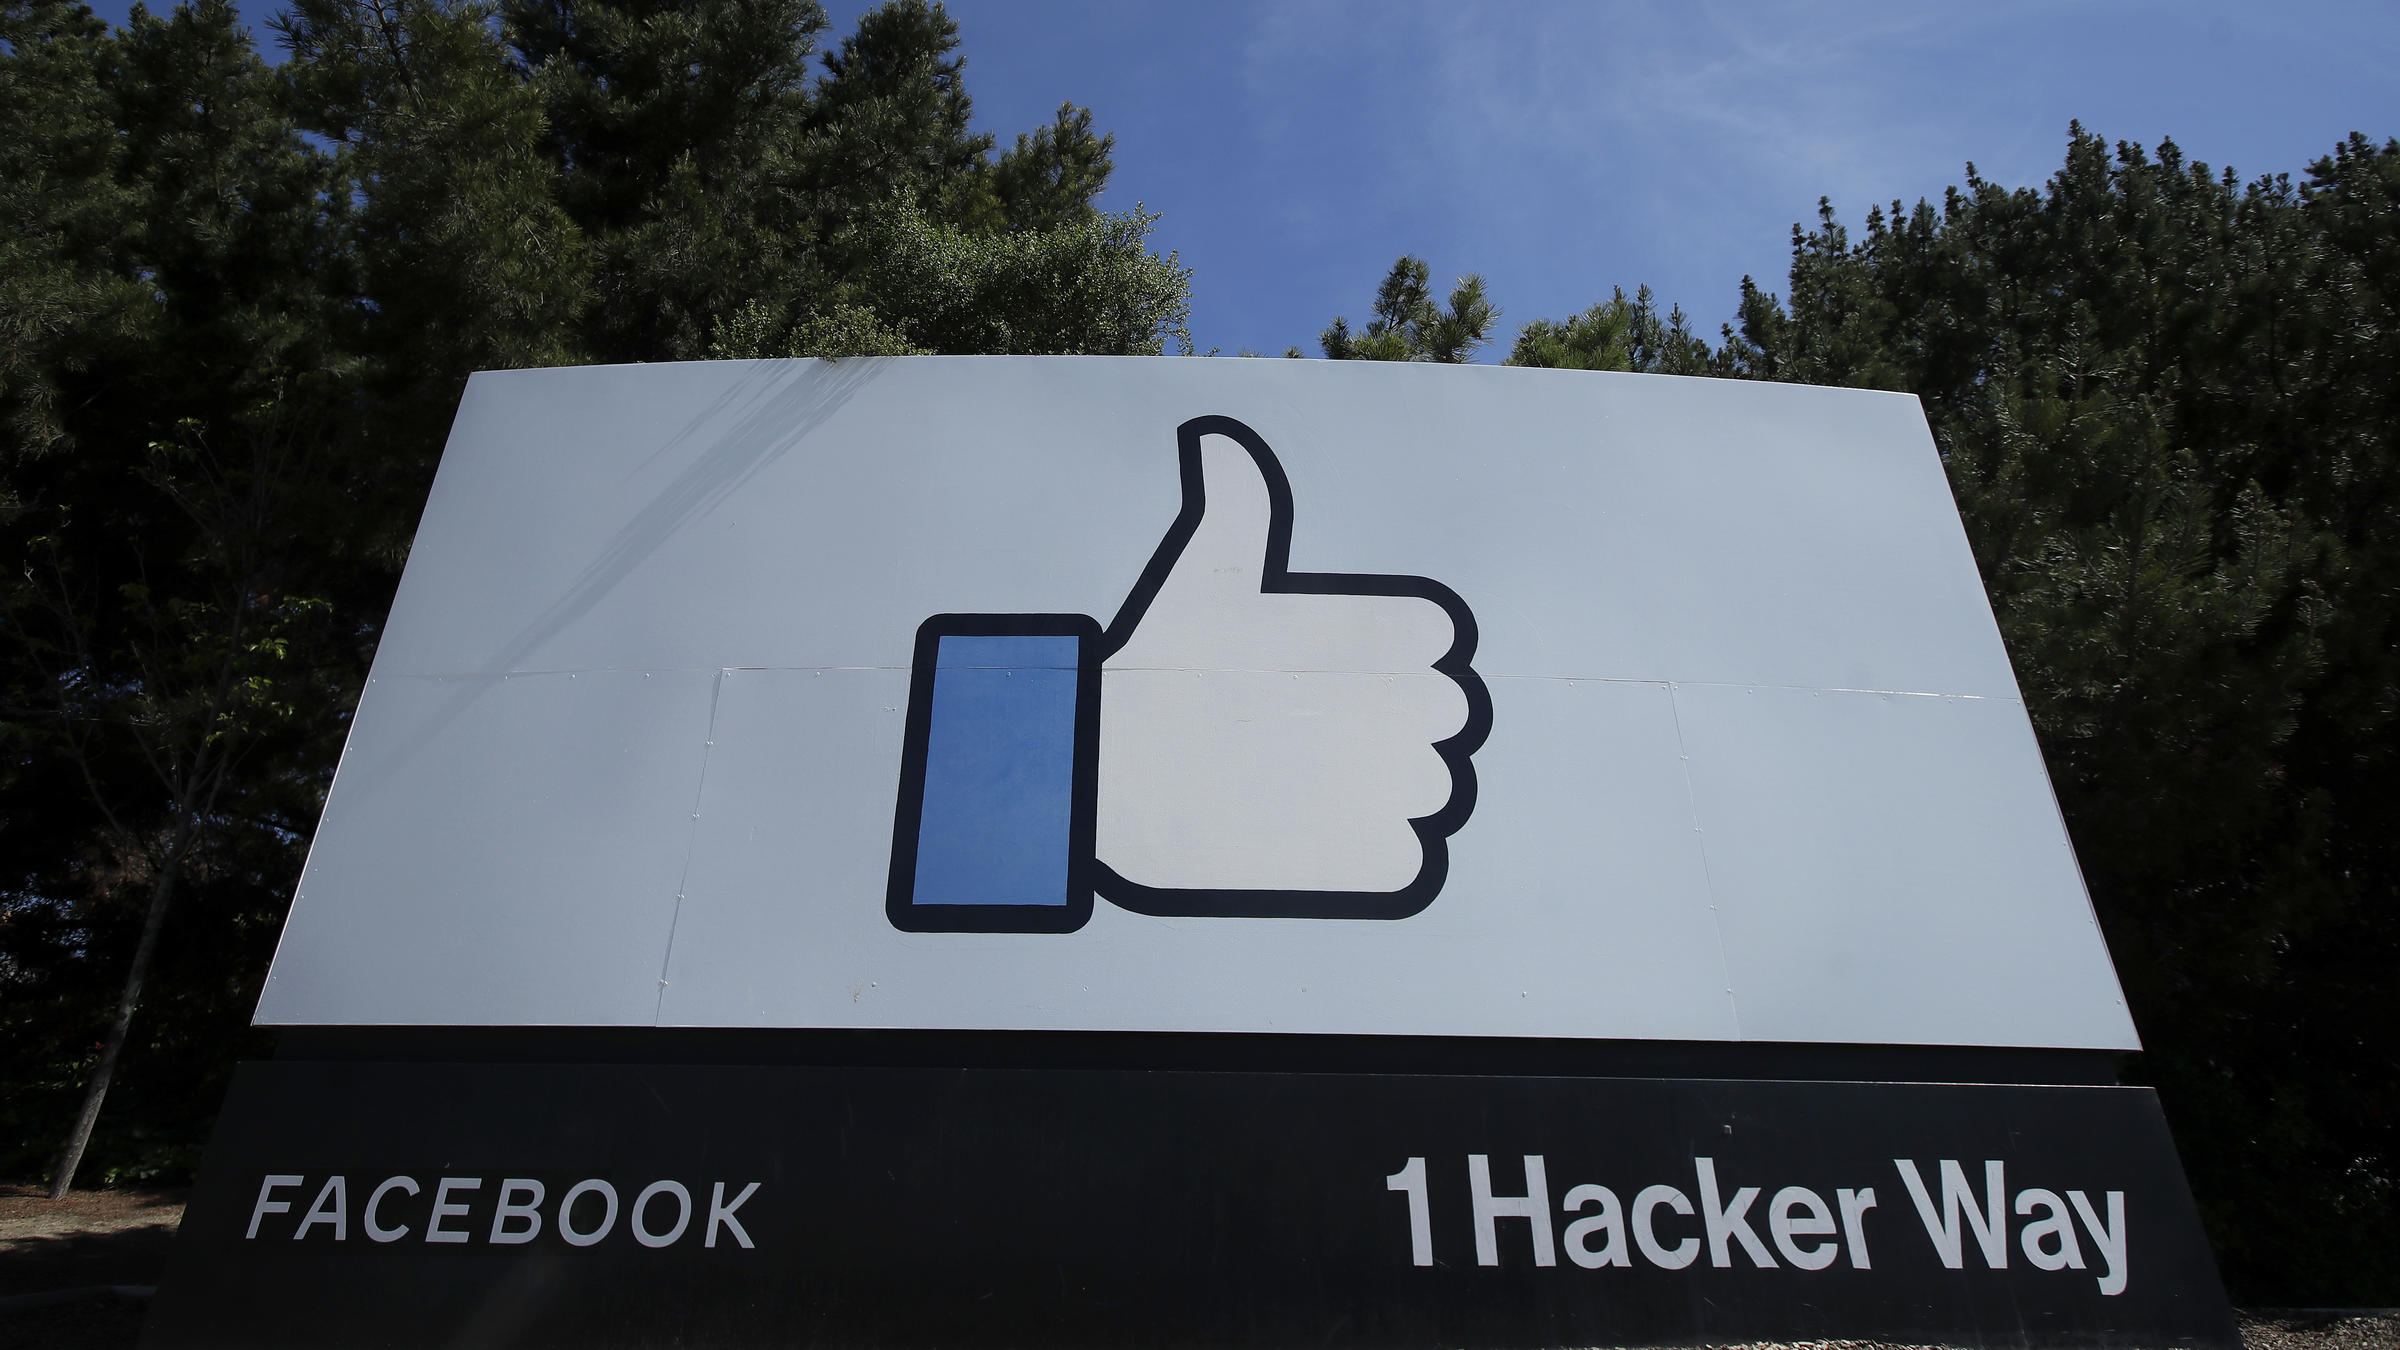 Facebook's Mark Zuckerberg embraces remote work beyond Silicon Valley